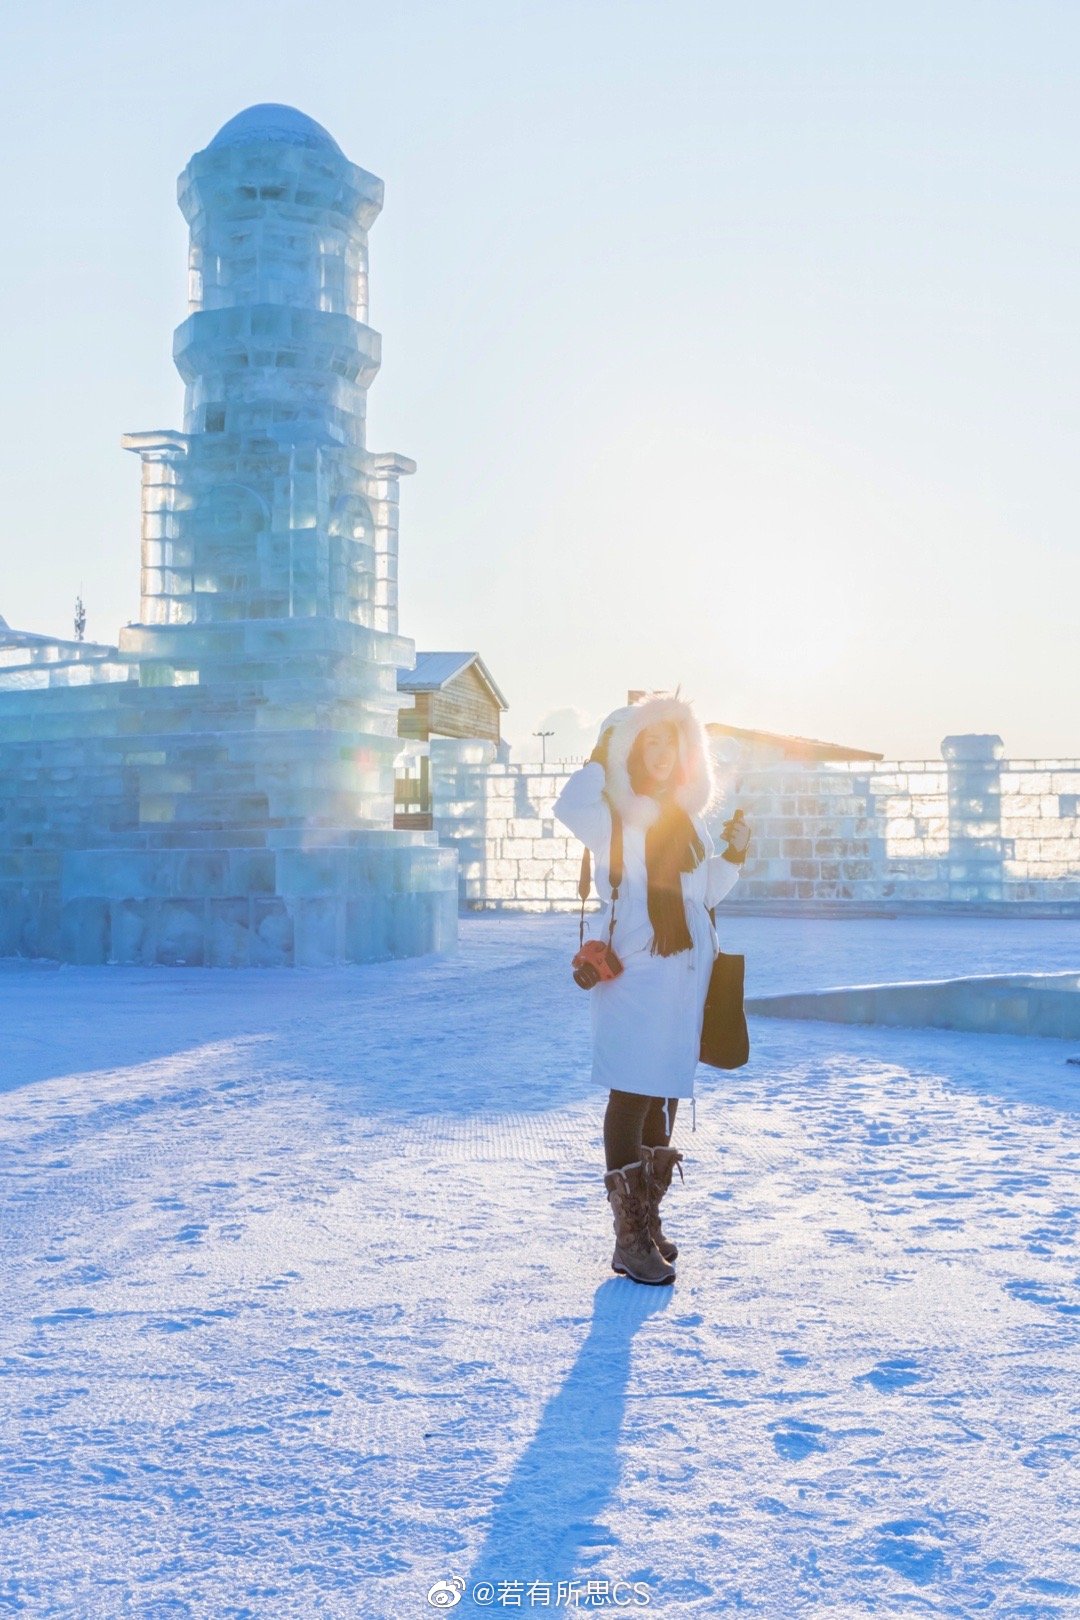 【携程攻略】哈尔滨哈尔滨冰雪大世界景点,冰雕、雪雕、冰灯、冰滑梯，真的是让人眼花缭乱～白天和夜间执行不同…